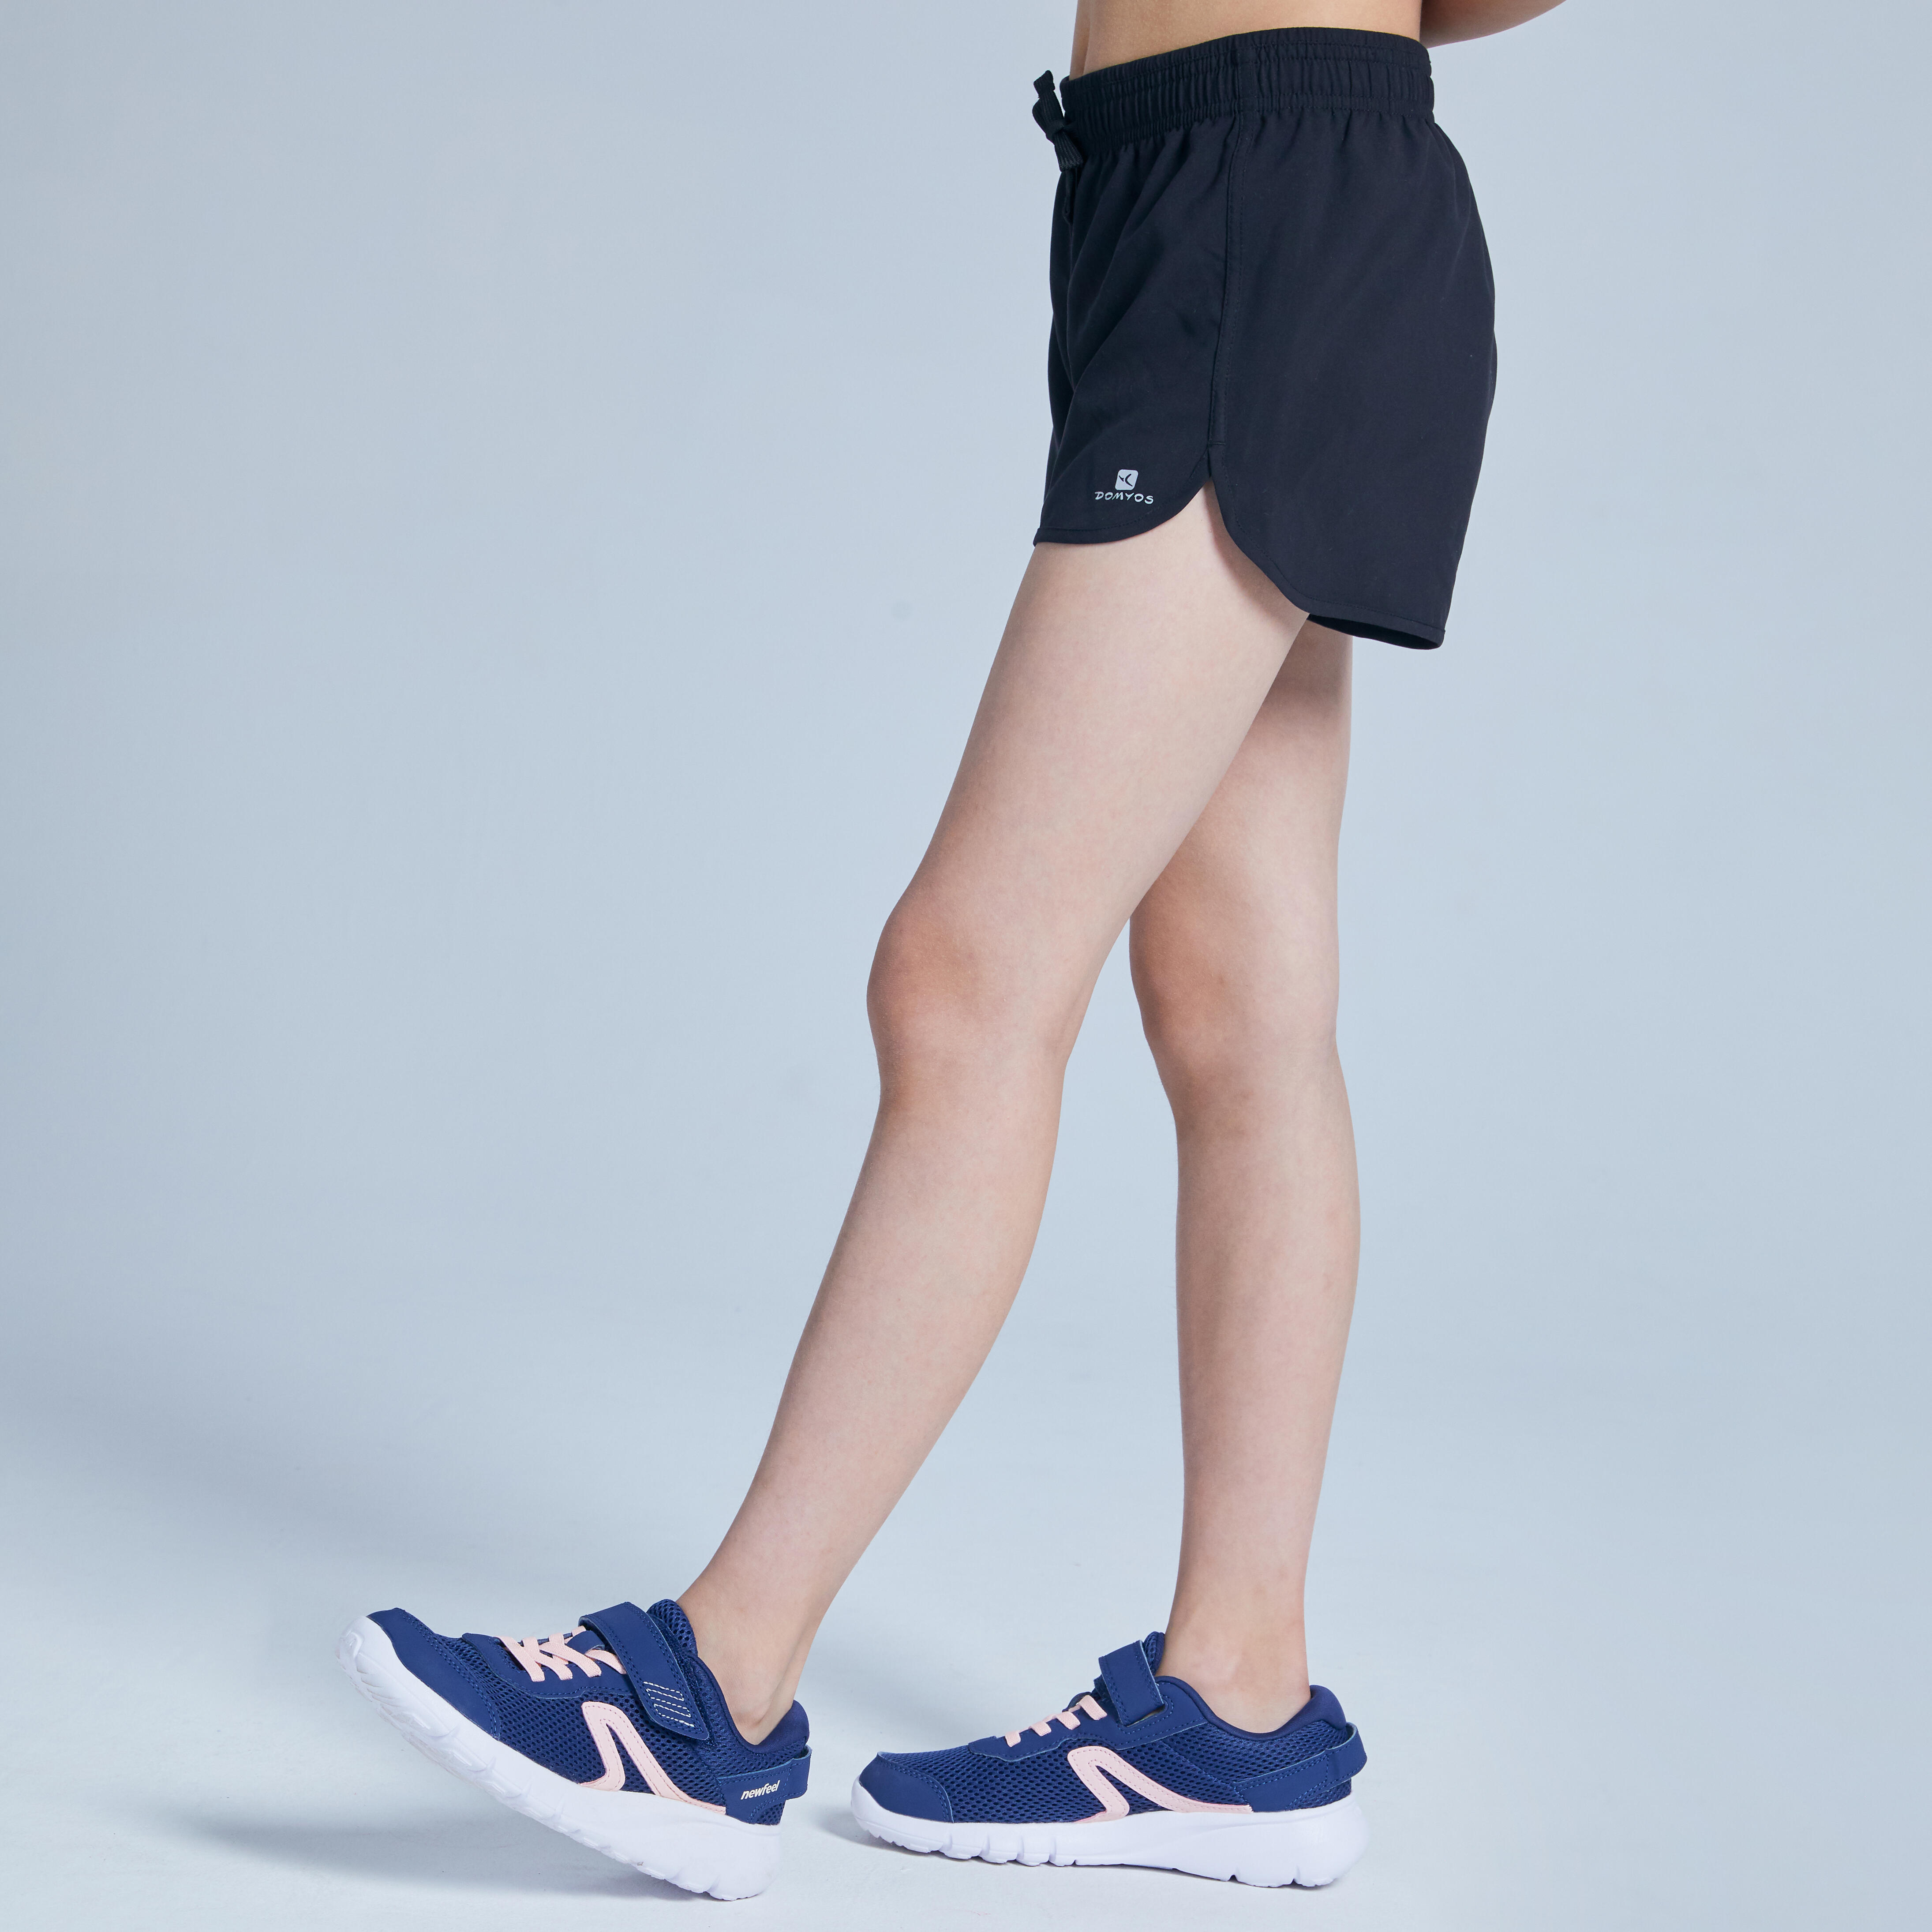 W500 Breathable Gym Shorts - Black - Girls’